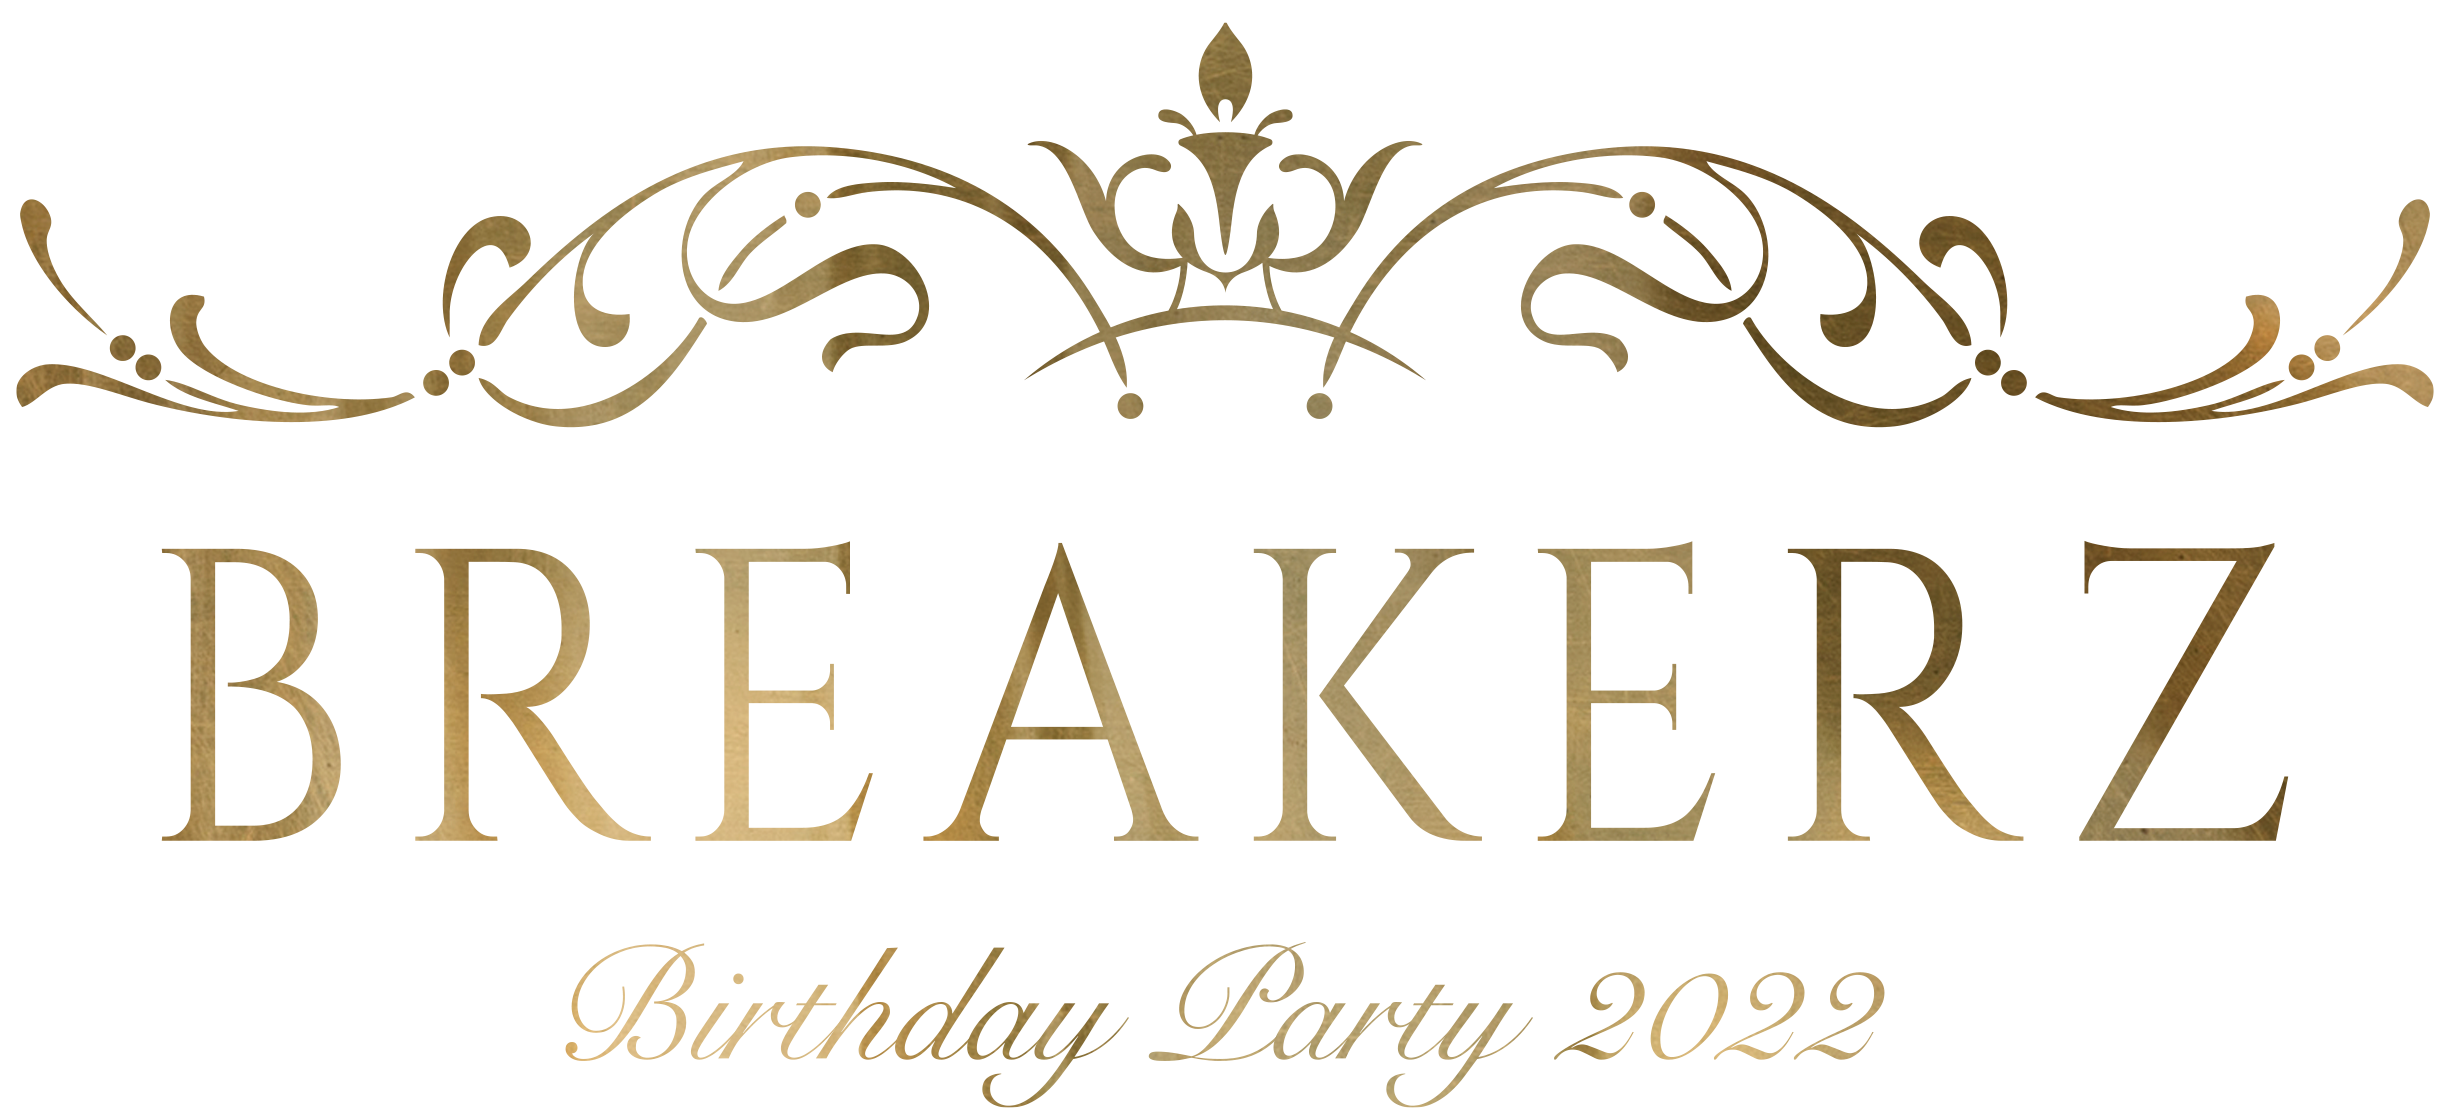 BREAKERZ BIRTHDAY PARTY 2022